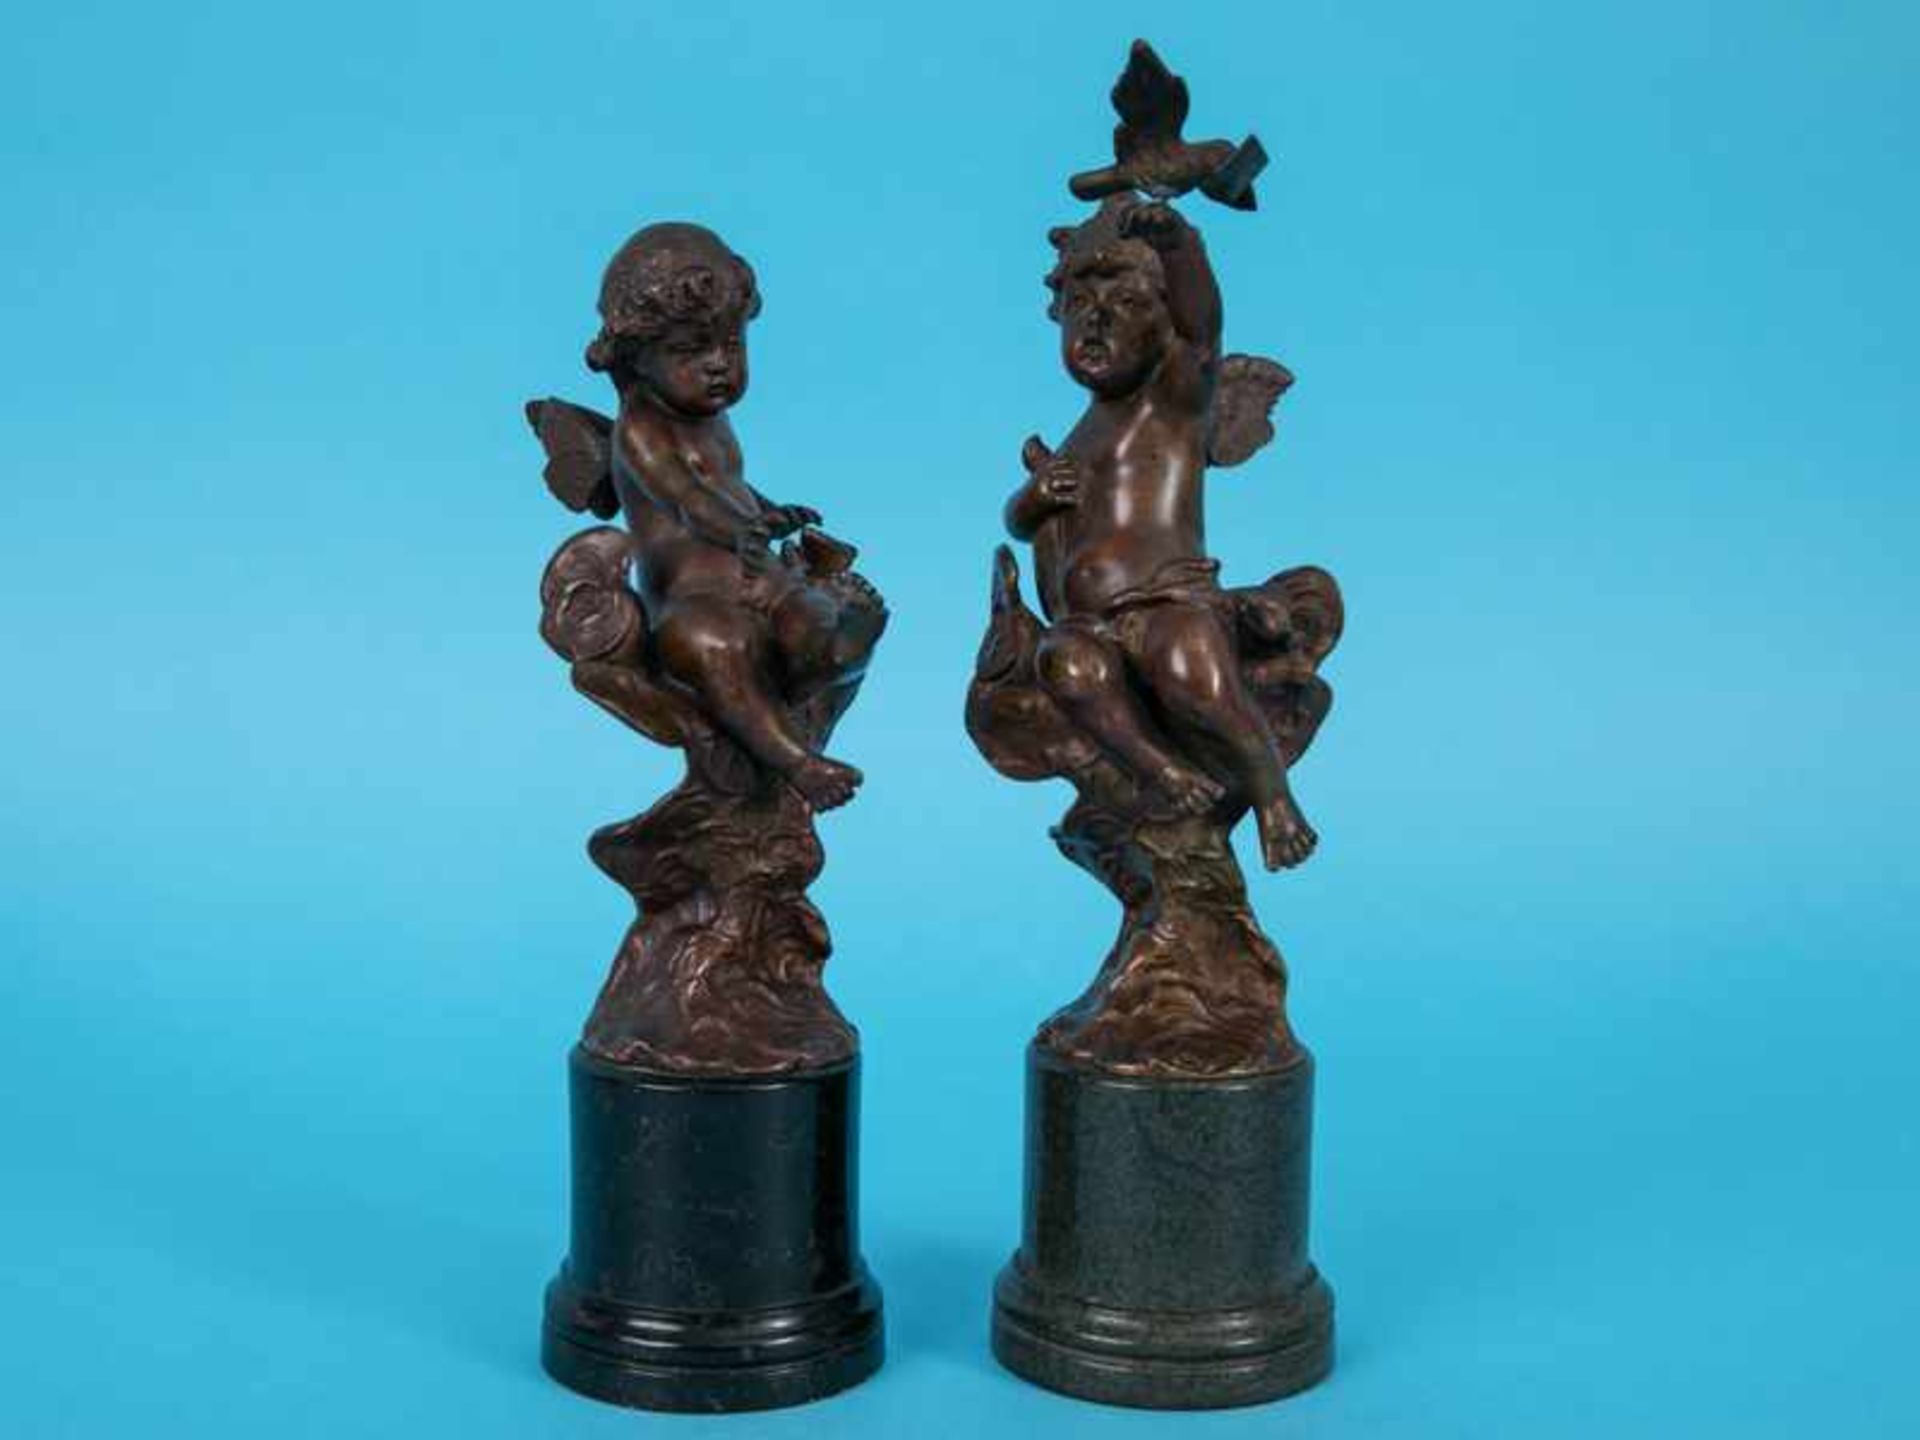 Iffland, Franz (1862 - 1935). Paar Putti-/Amoretten-Figurenplastiken, Bronze, goldbraunfarbig